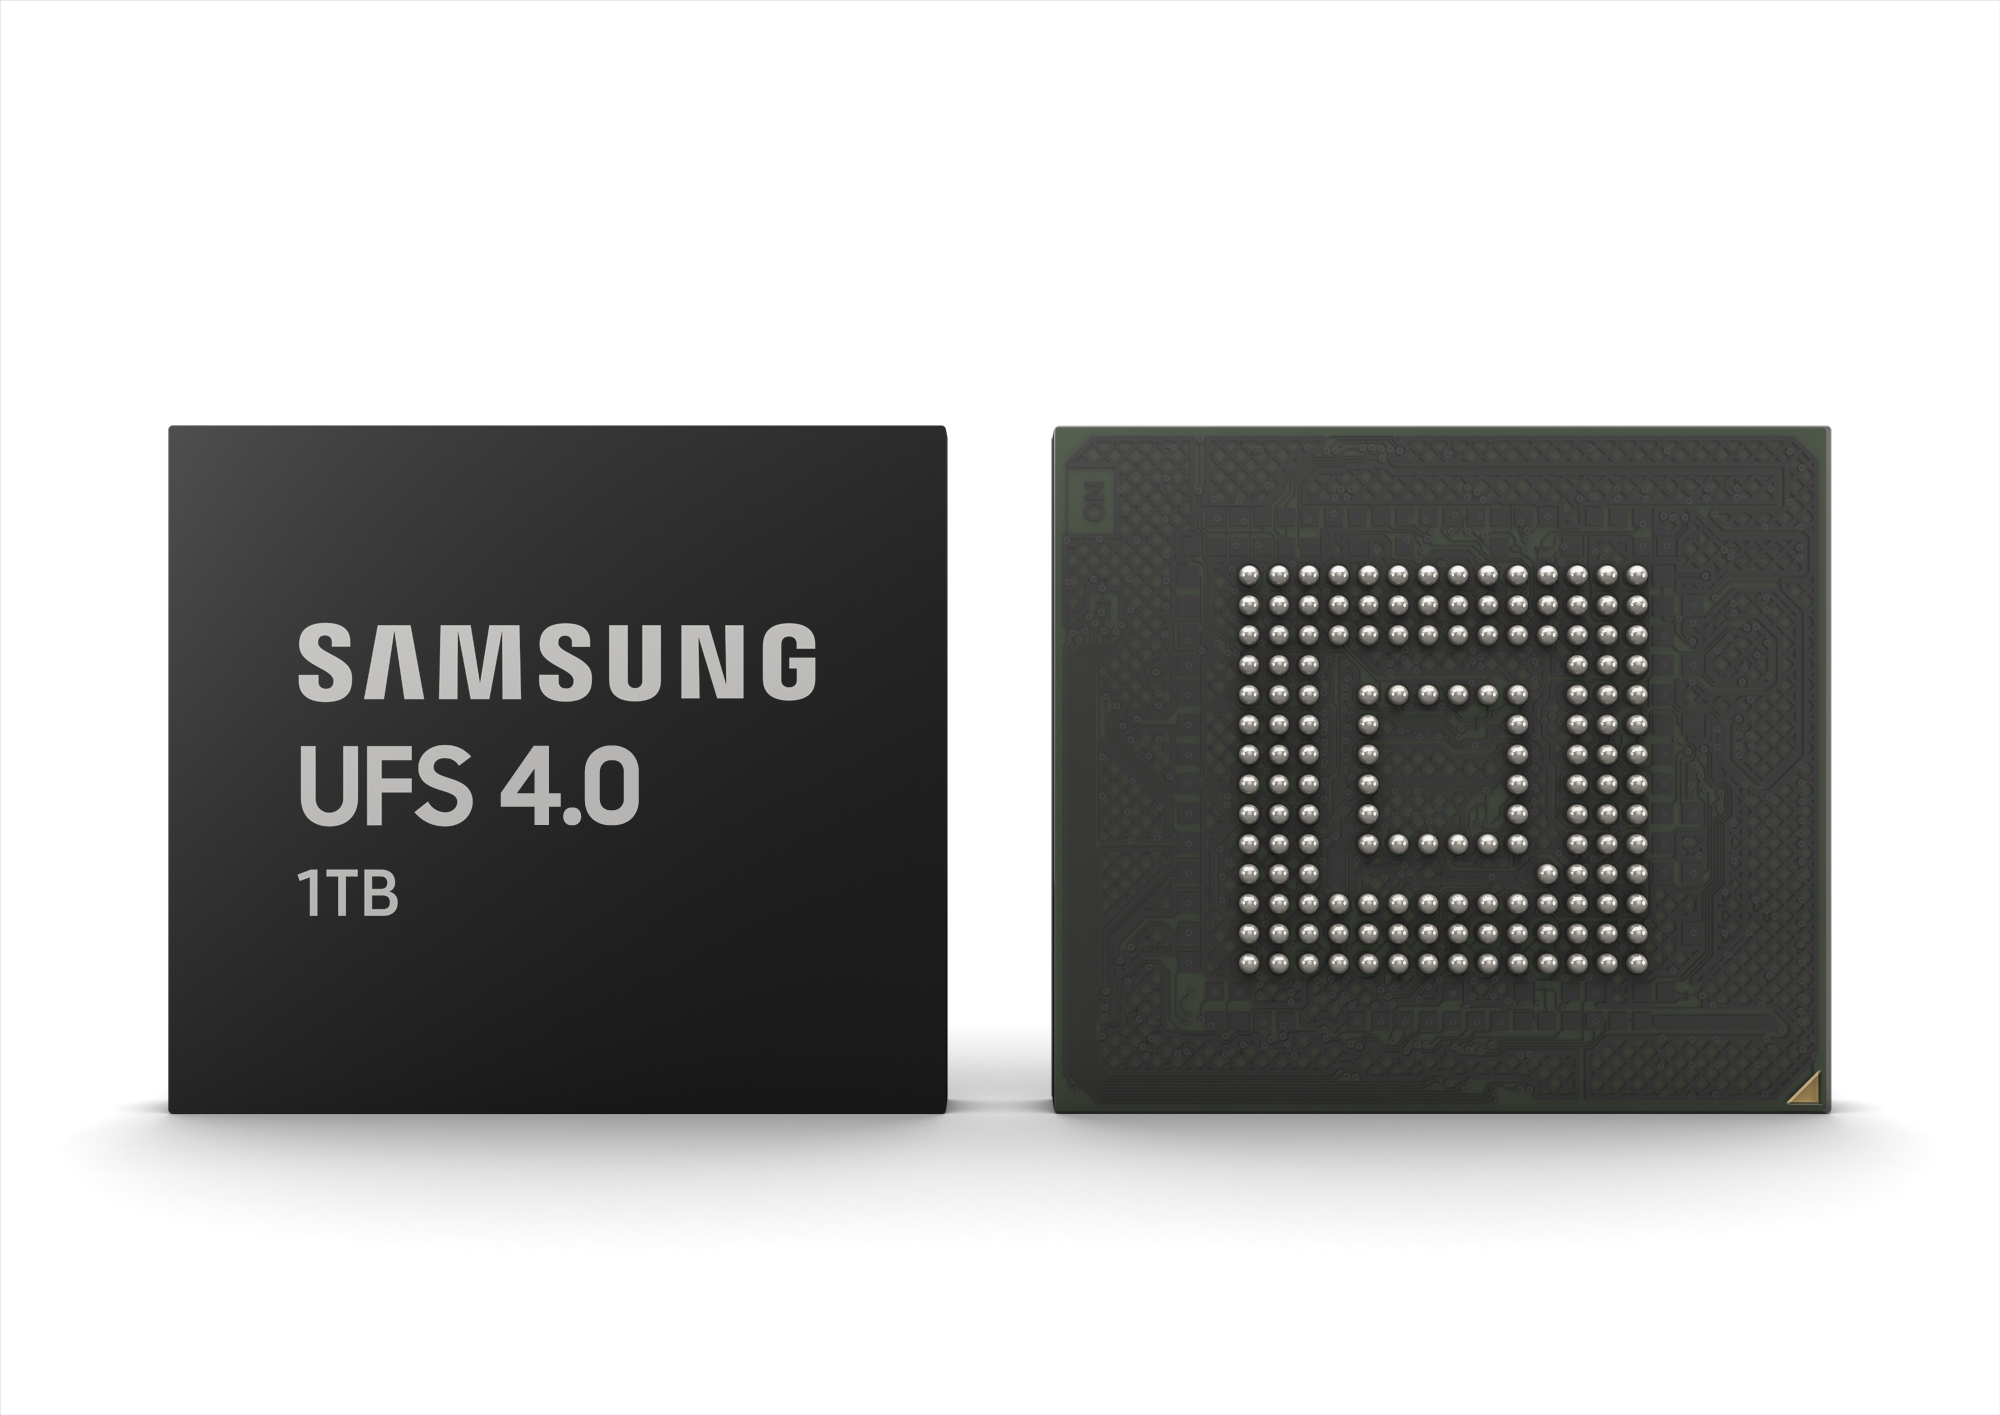 Samsung เปิดตัวหน่วยความแบบ UFS 4.0 มีความเร็วในการเขียน/อ่านอยู่ที่ 2800/4200 MB/s เร็วกว่า รุ่นเก่าถึง 46%